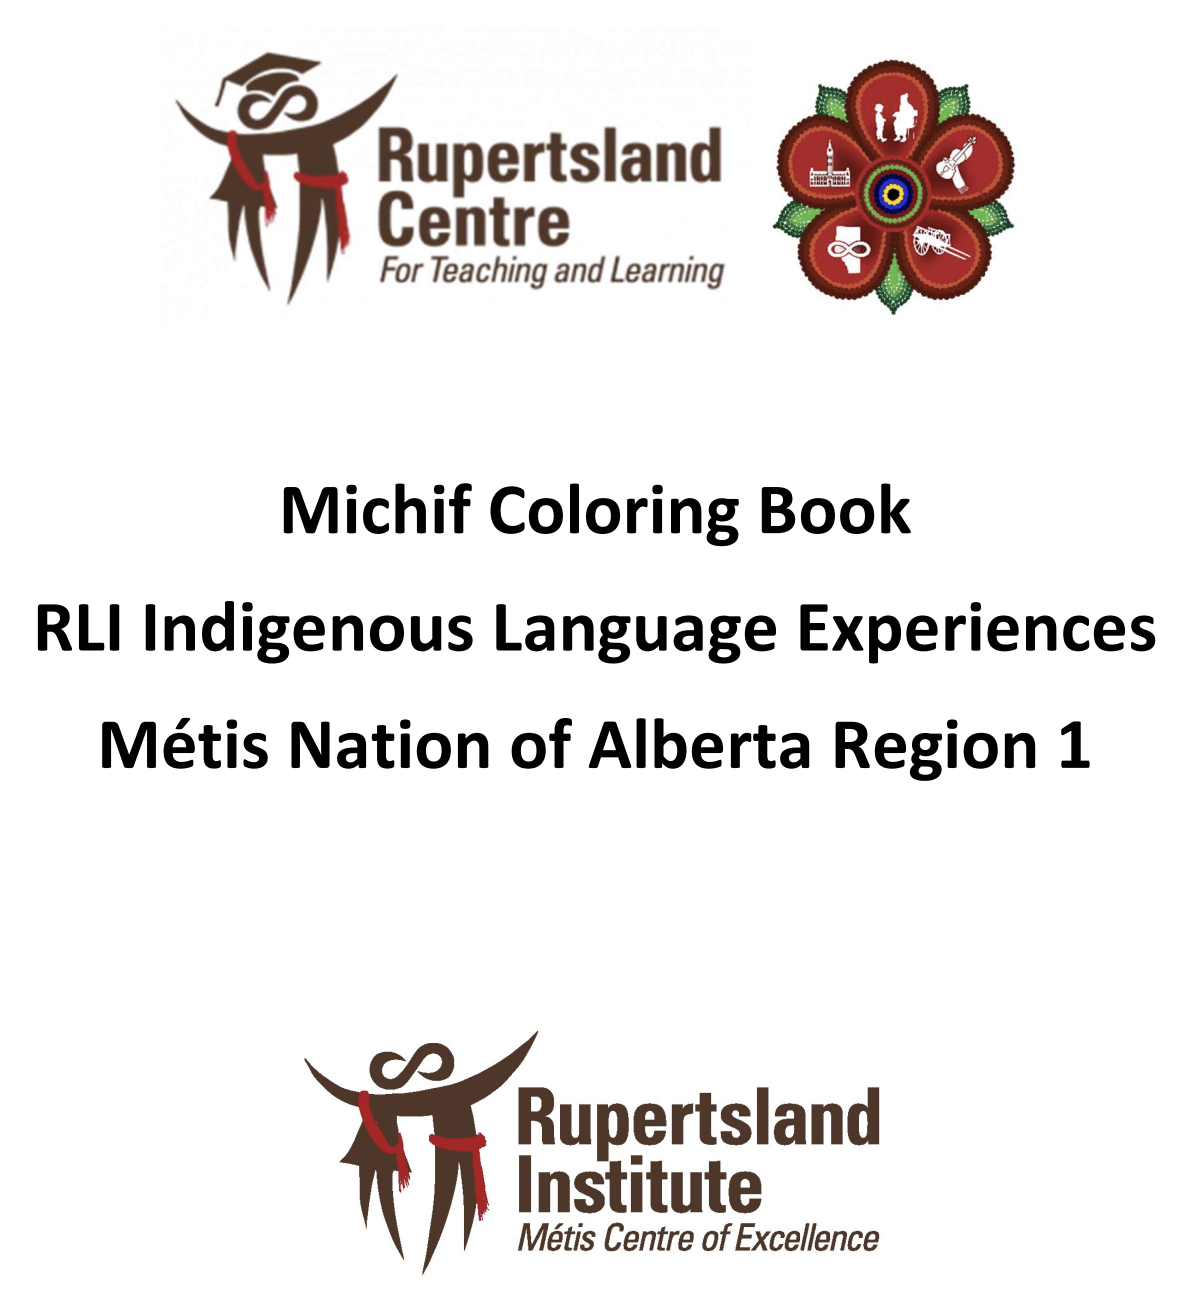 RLI ILE Region 1 - Michif Coloring Book